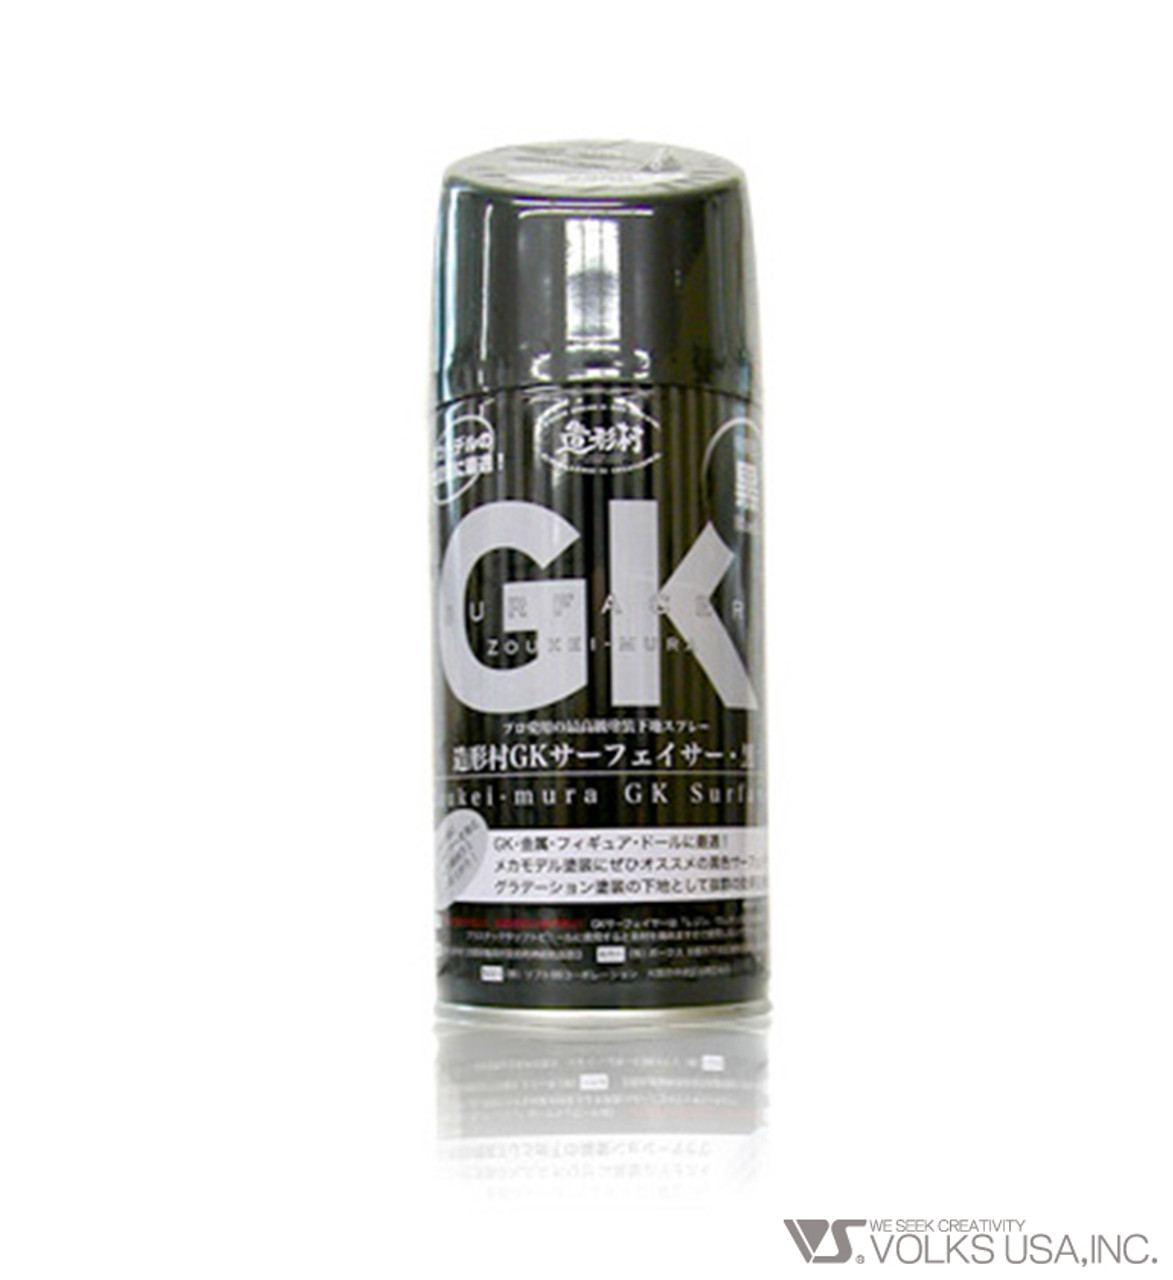 GK SURFACER 300ML - Black